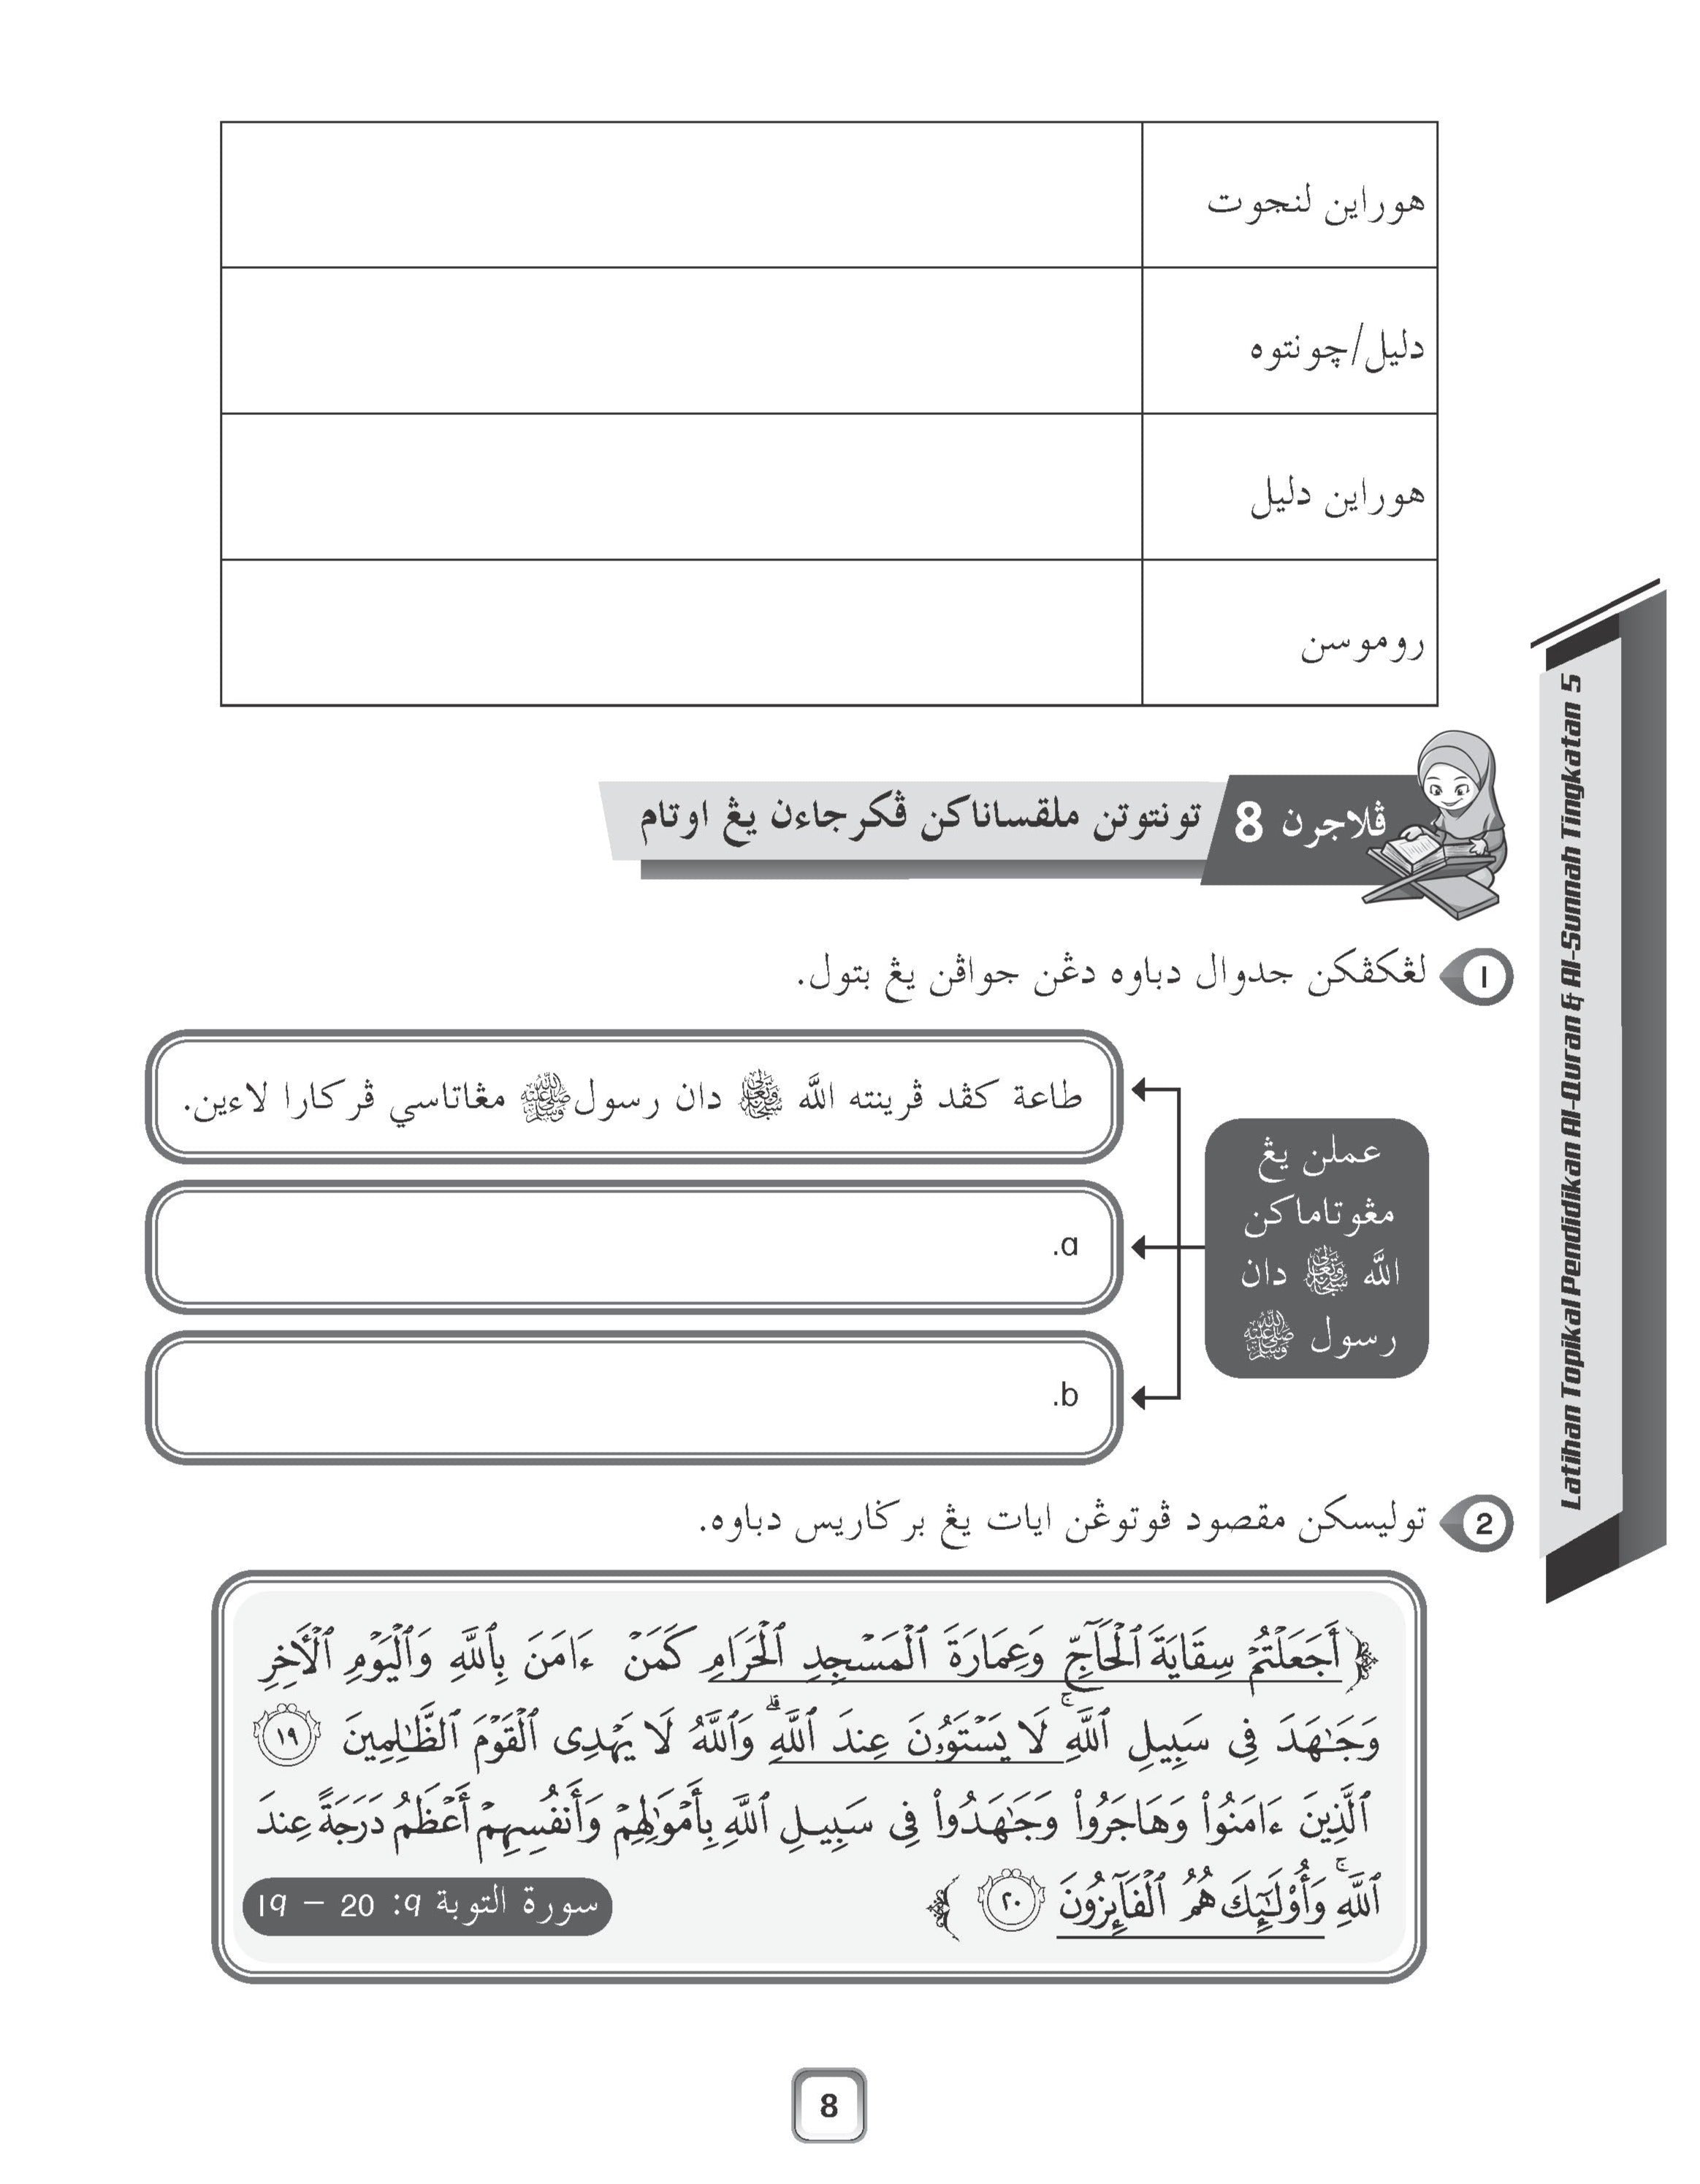 Maximum Practice SPM - Latihan Topikal Pendidikan Al-Quran Dan Al-Sunnah Tingkatan 5 - (TBBS1269)